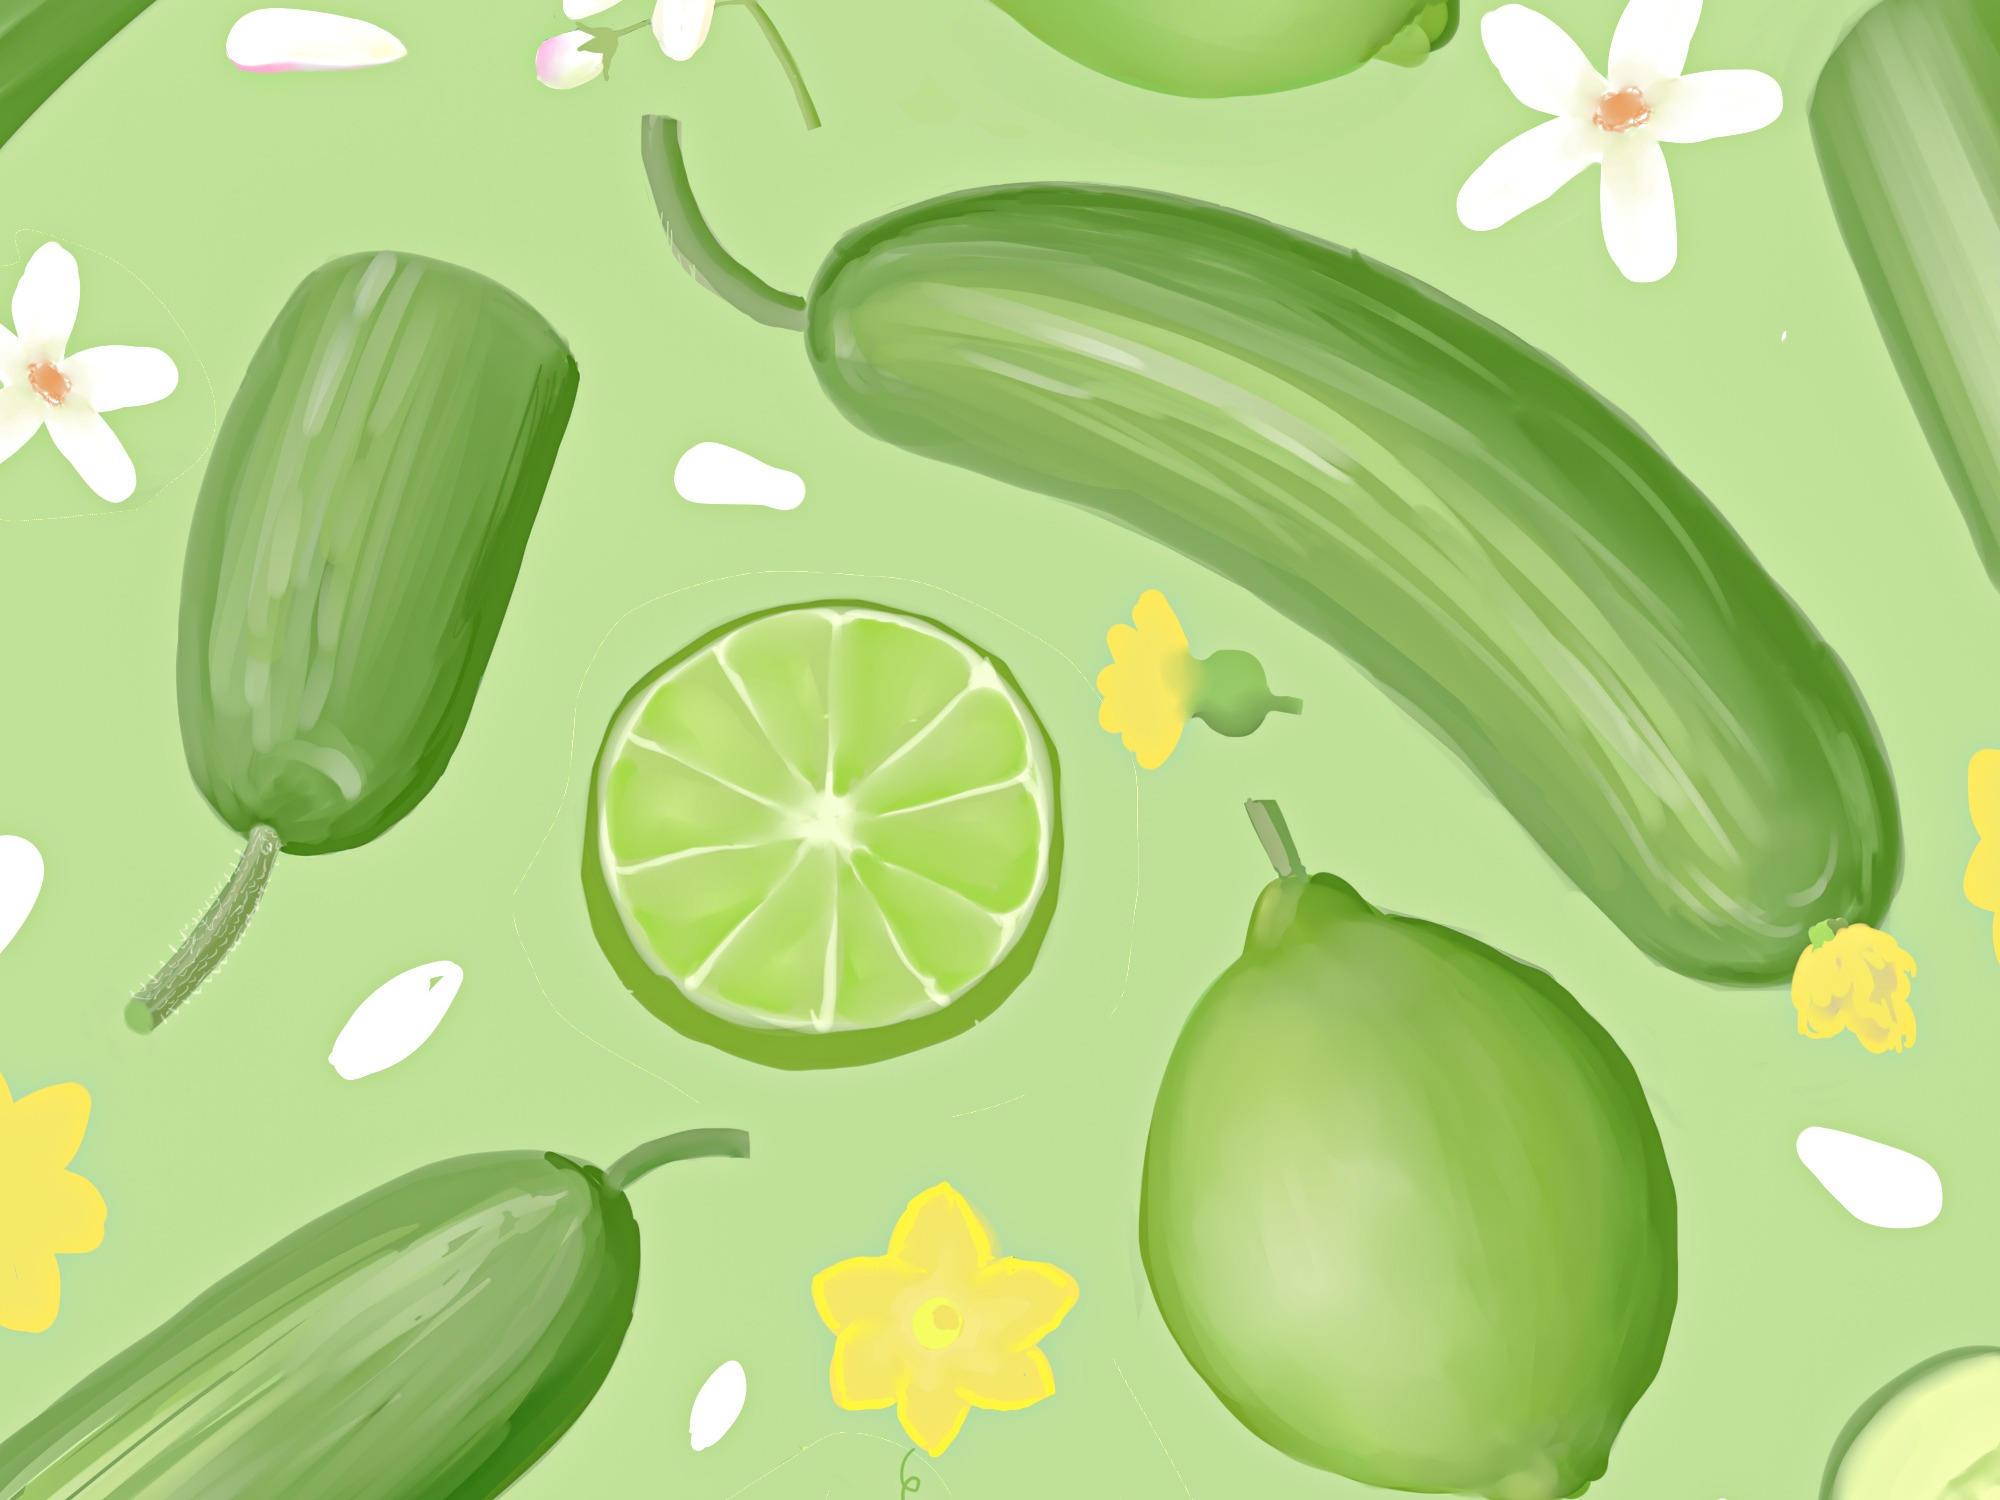 背景和打印的可爱图案西瓜和柠檬水果 库存例证. 插画 包括有 绿色, 健康, 模式, 食物, 甜甜, 本质 - 189955616